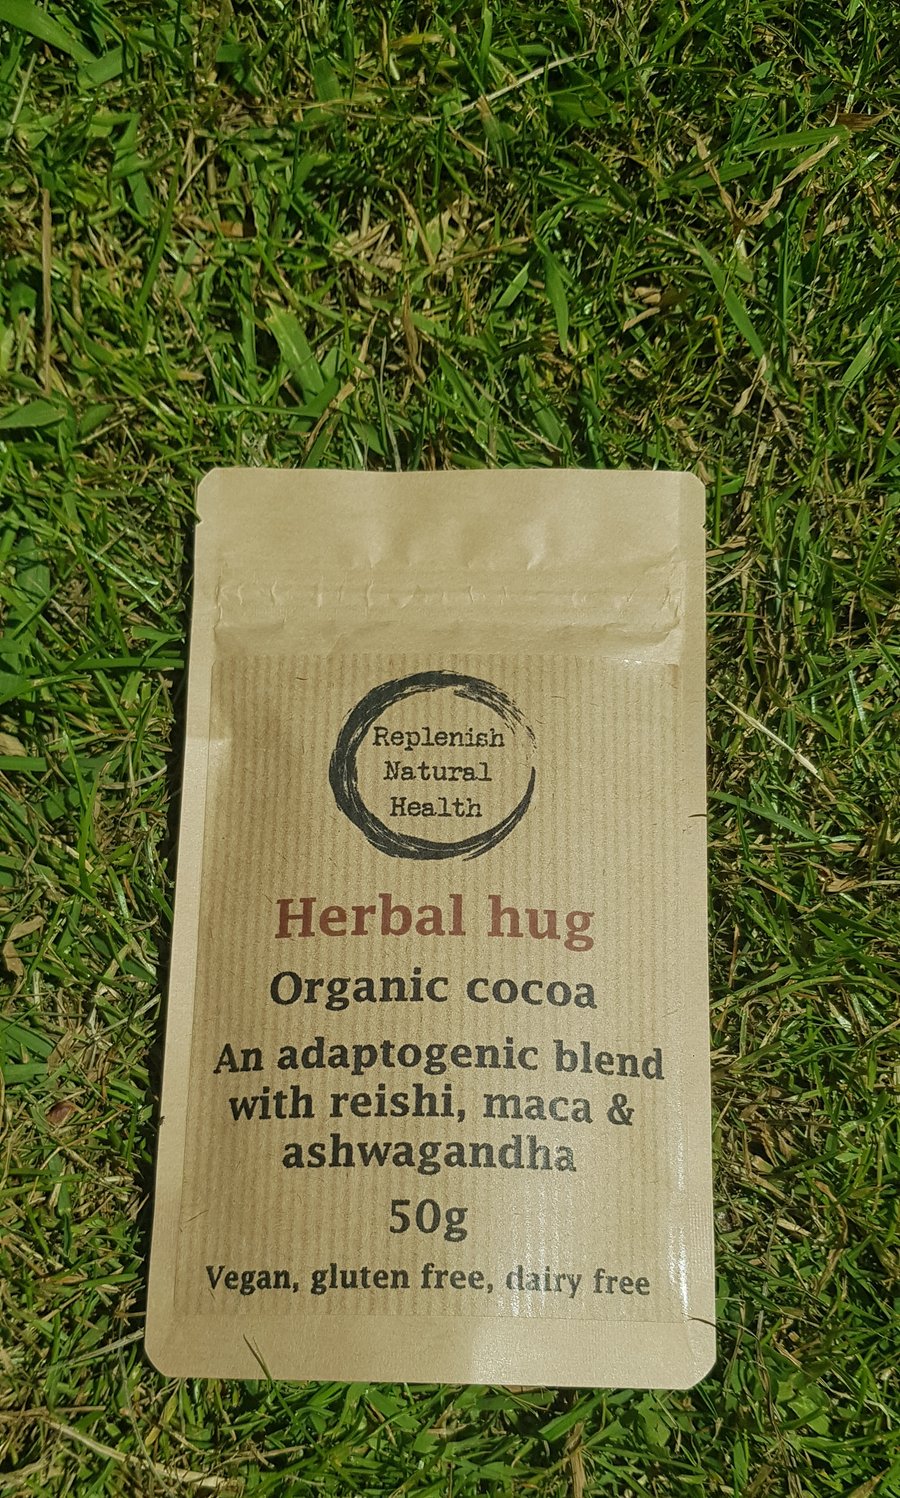 Herbal hug - Organic cocoa blend 50g